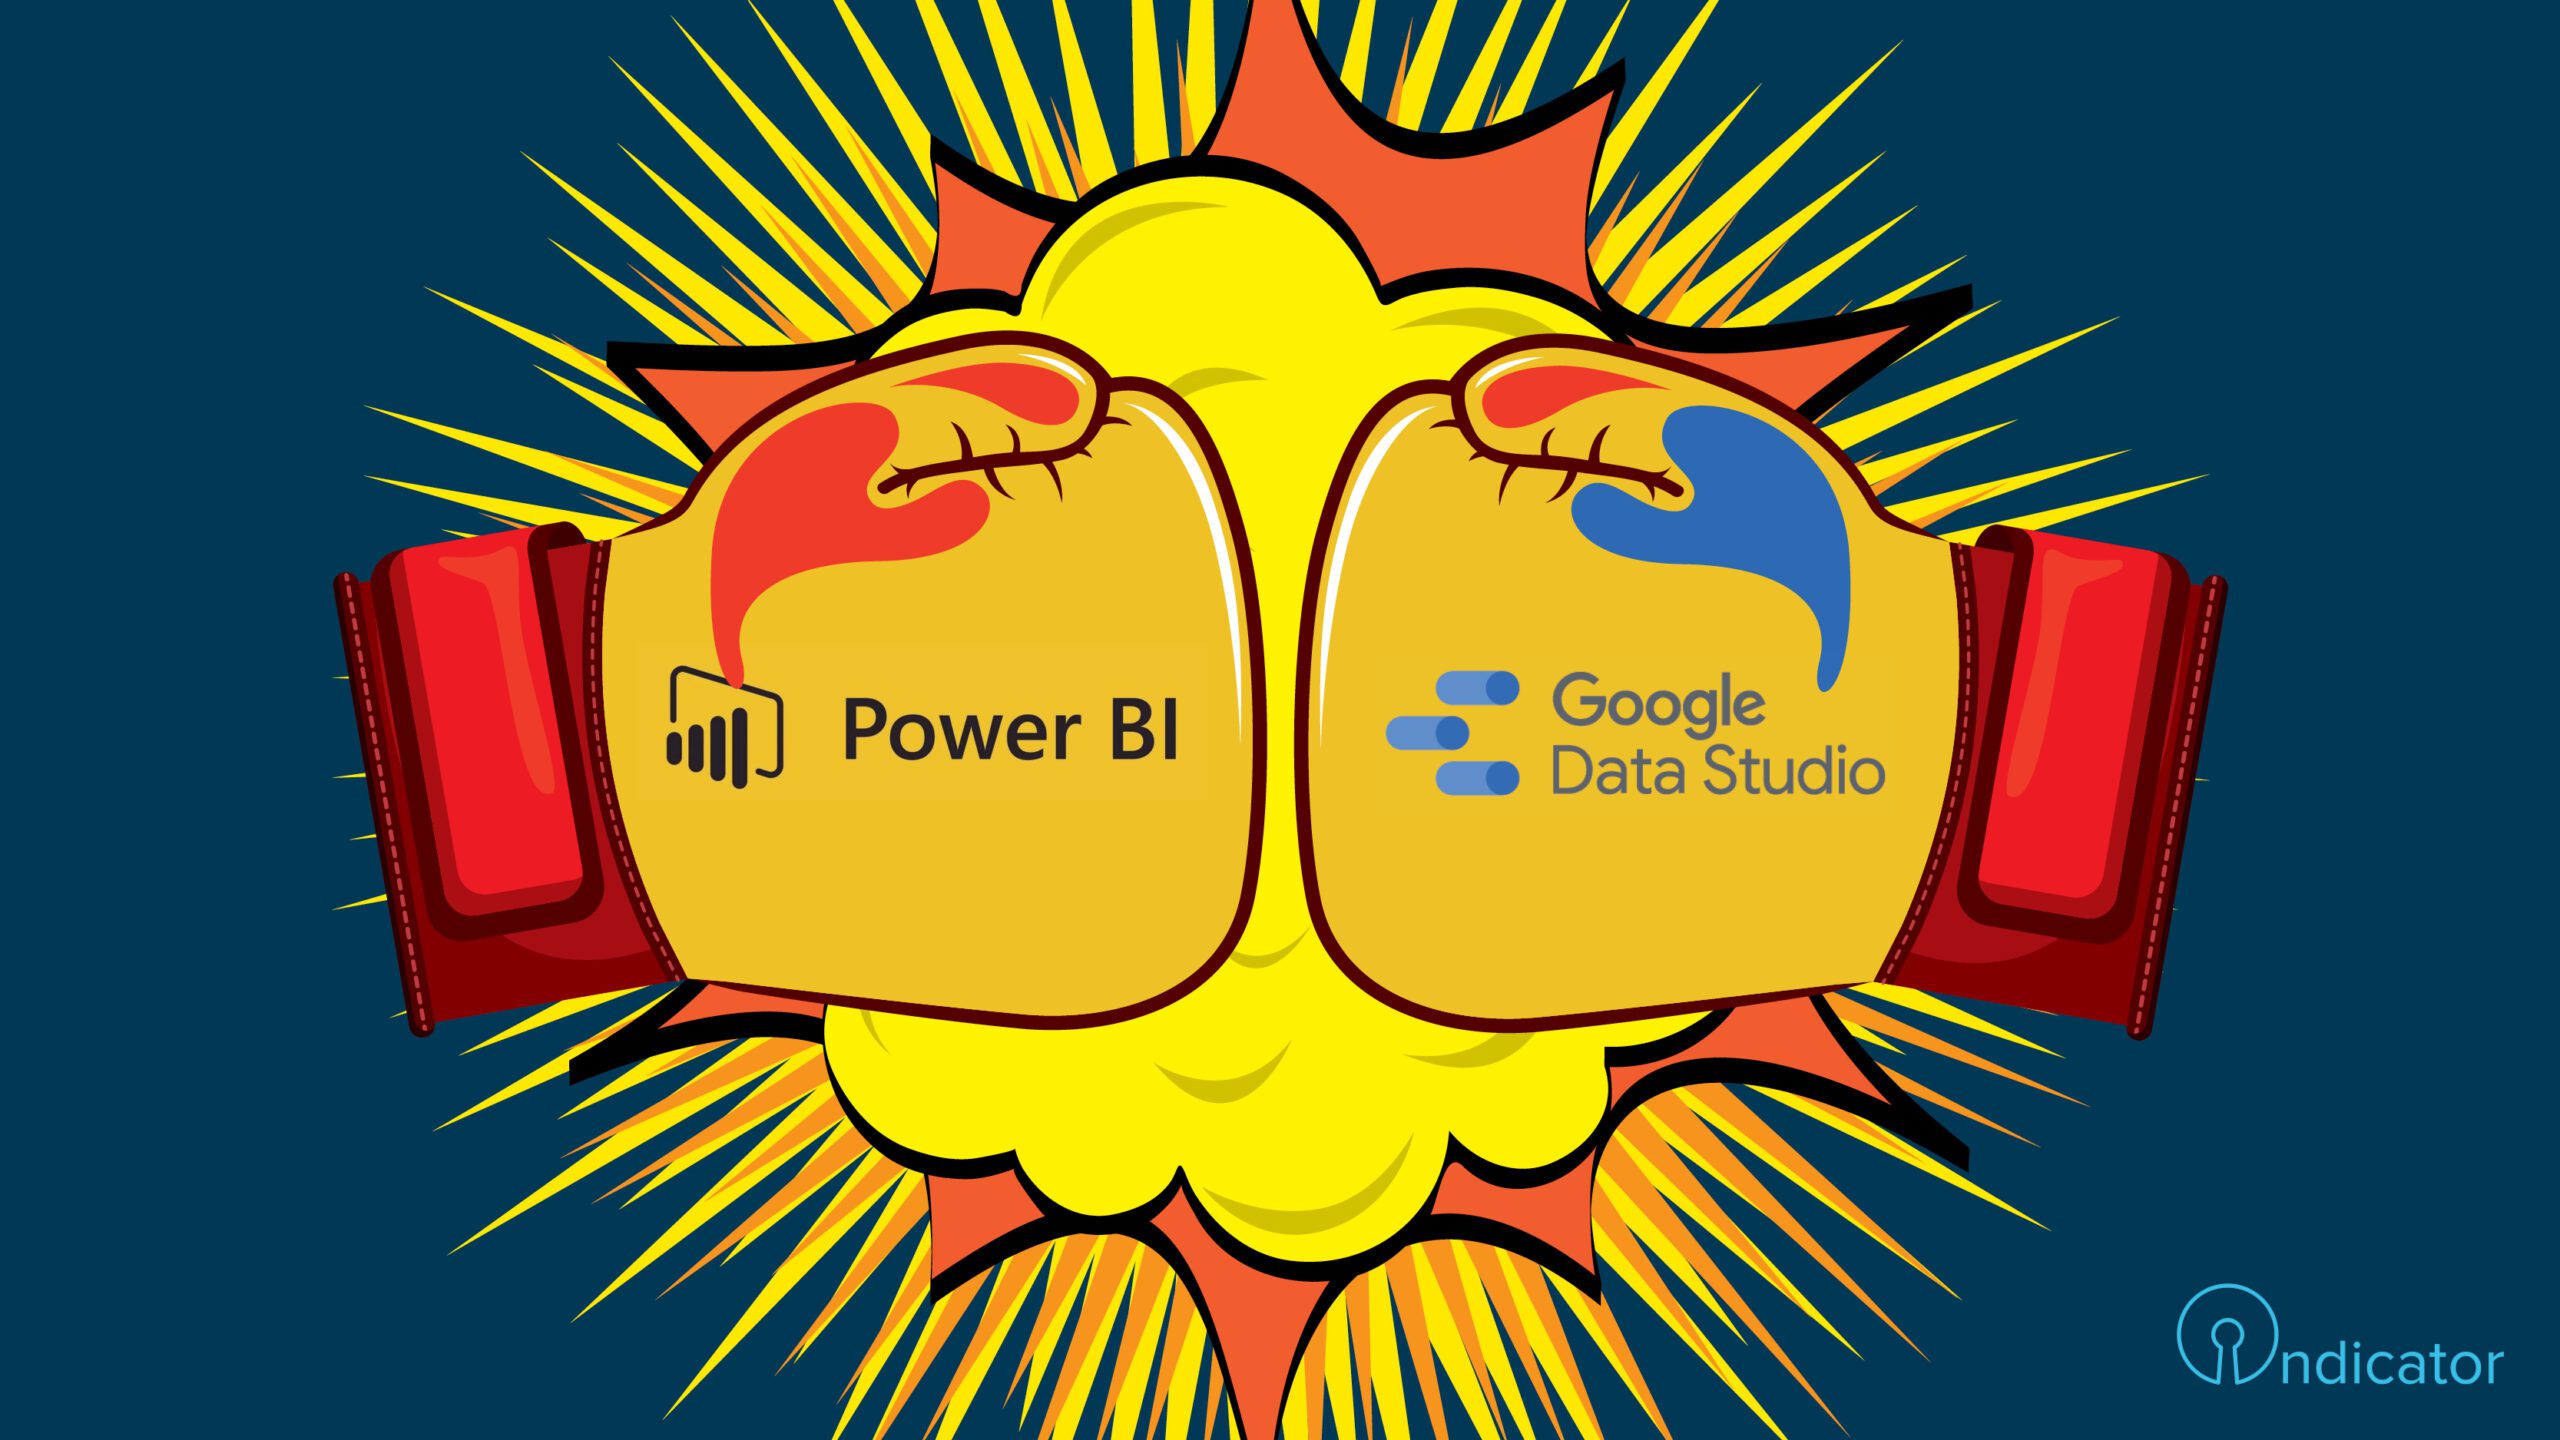 Power BI VS Google Data Studio